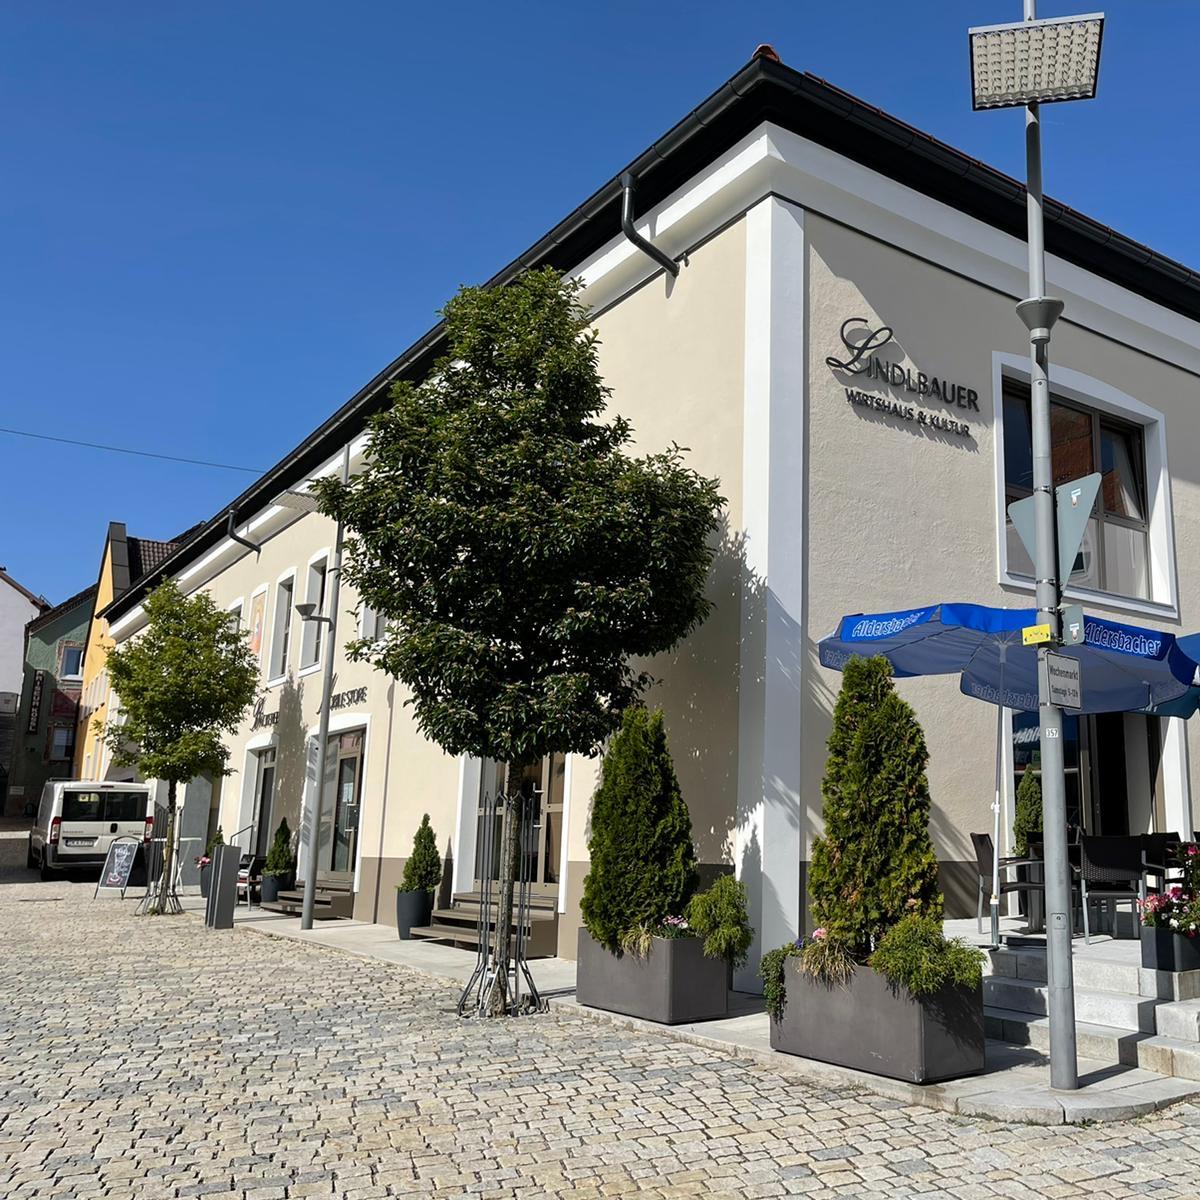 Restaurant "AloiS Bredl Gaststätte" in  Witzmannsberg